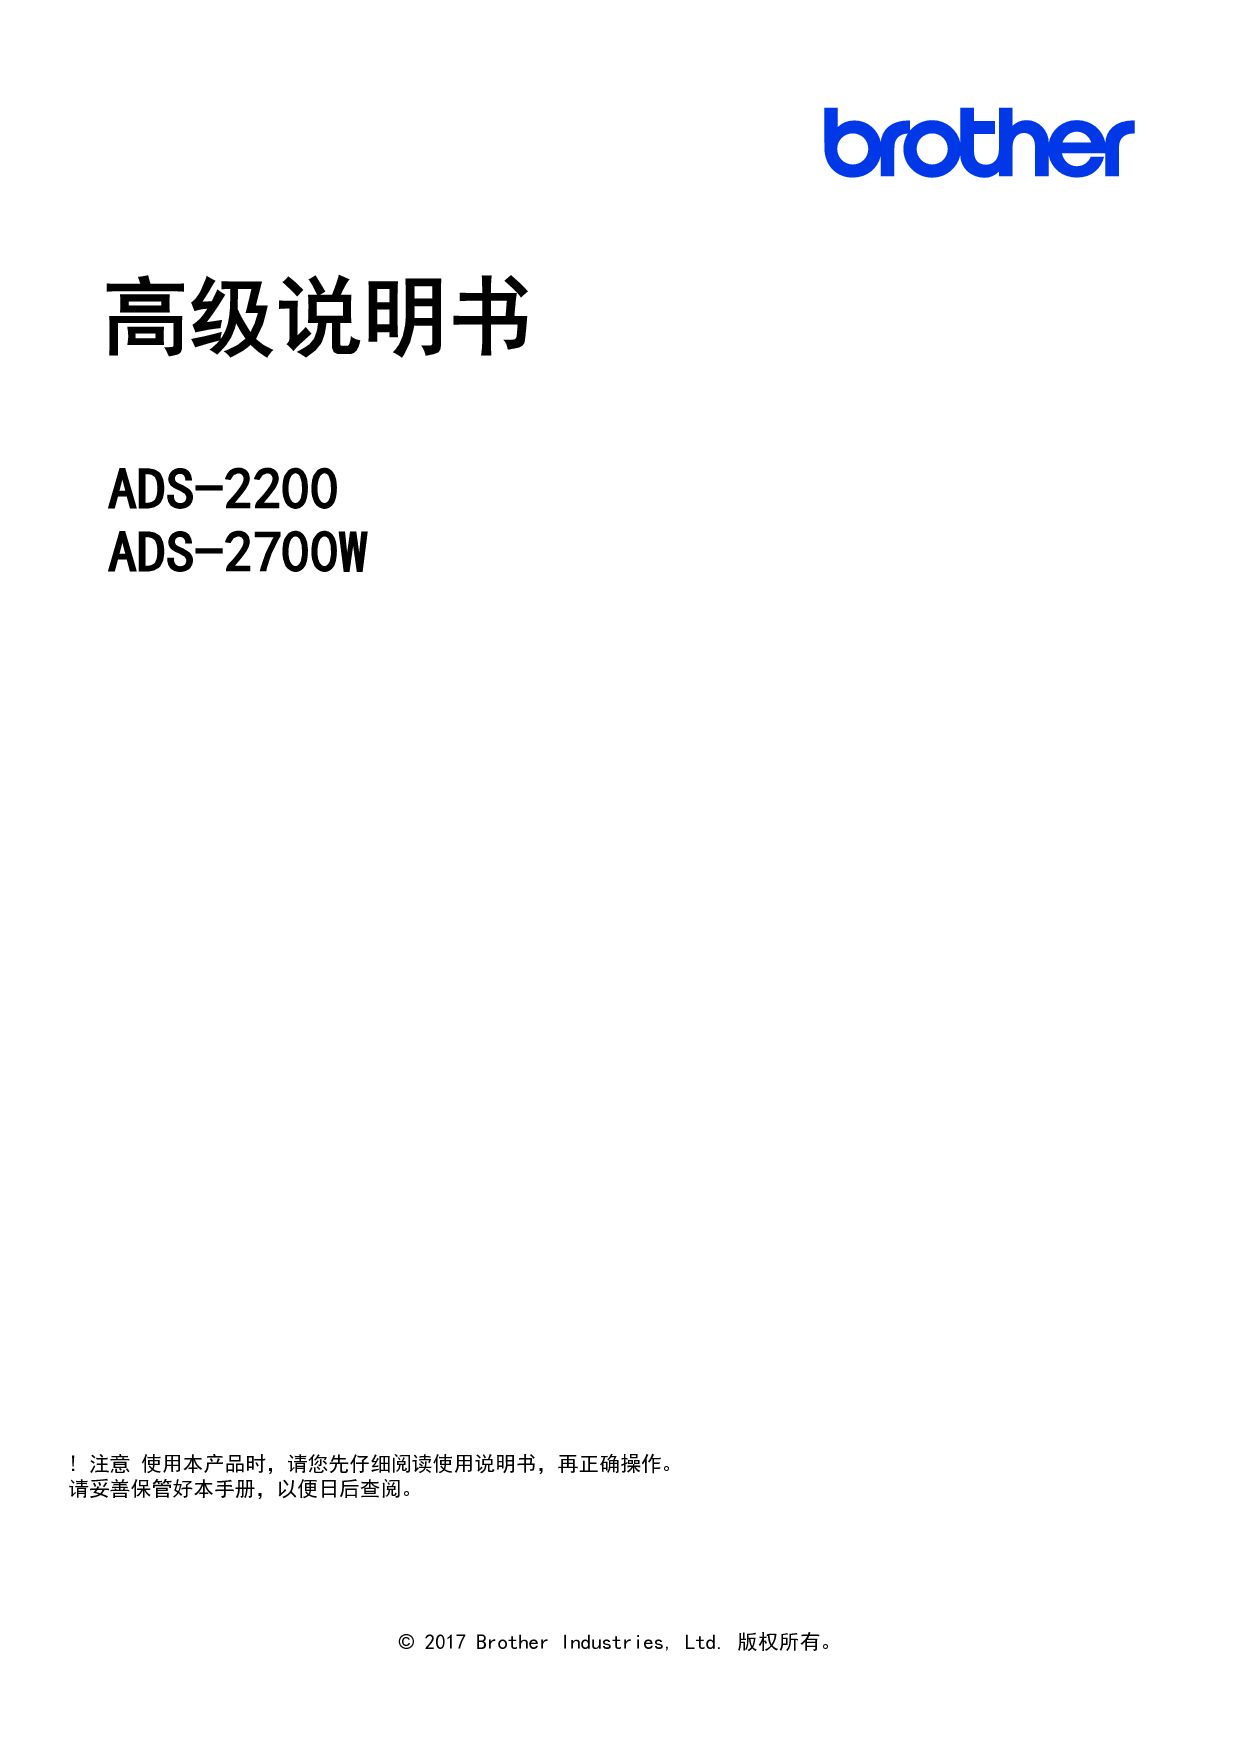 兄弟 Brother ADS-2200 高级 使用说明书 封面